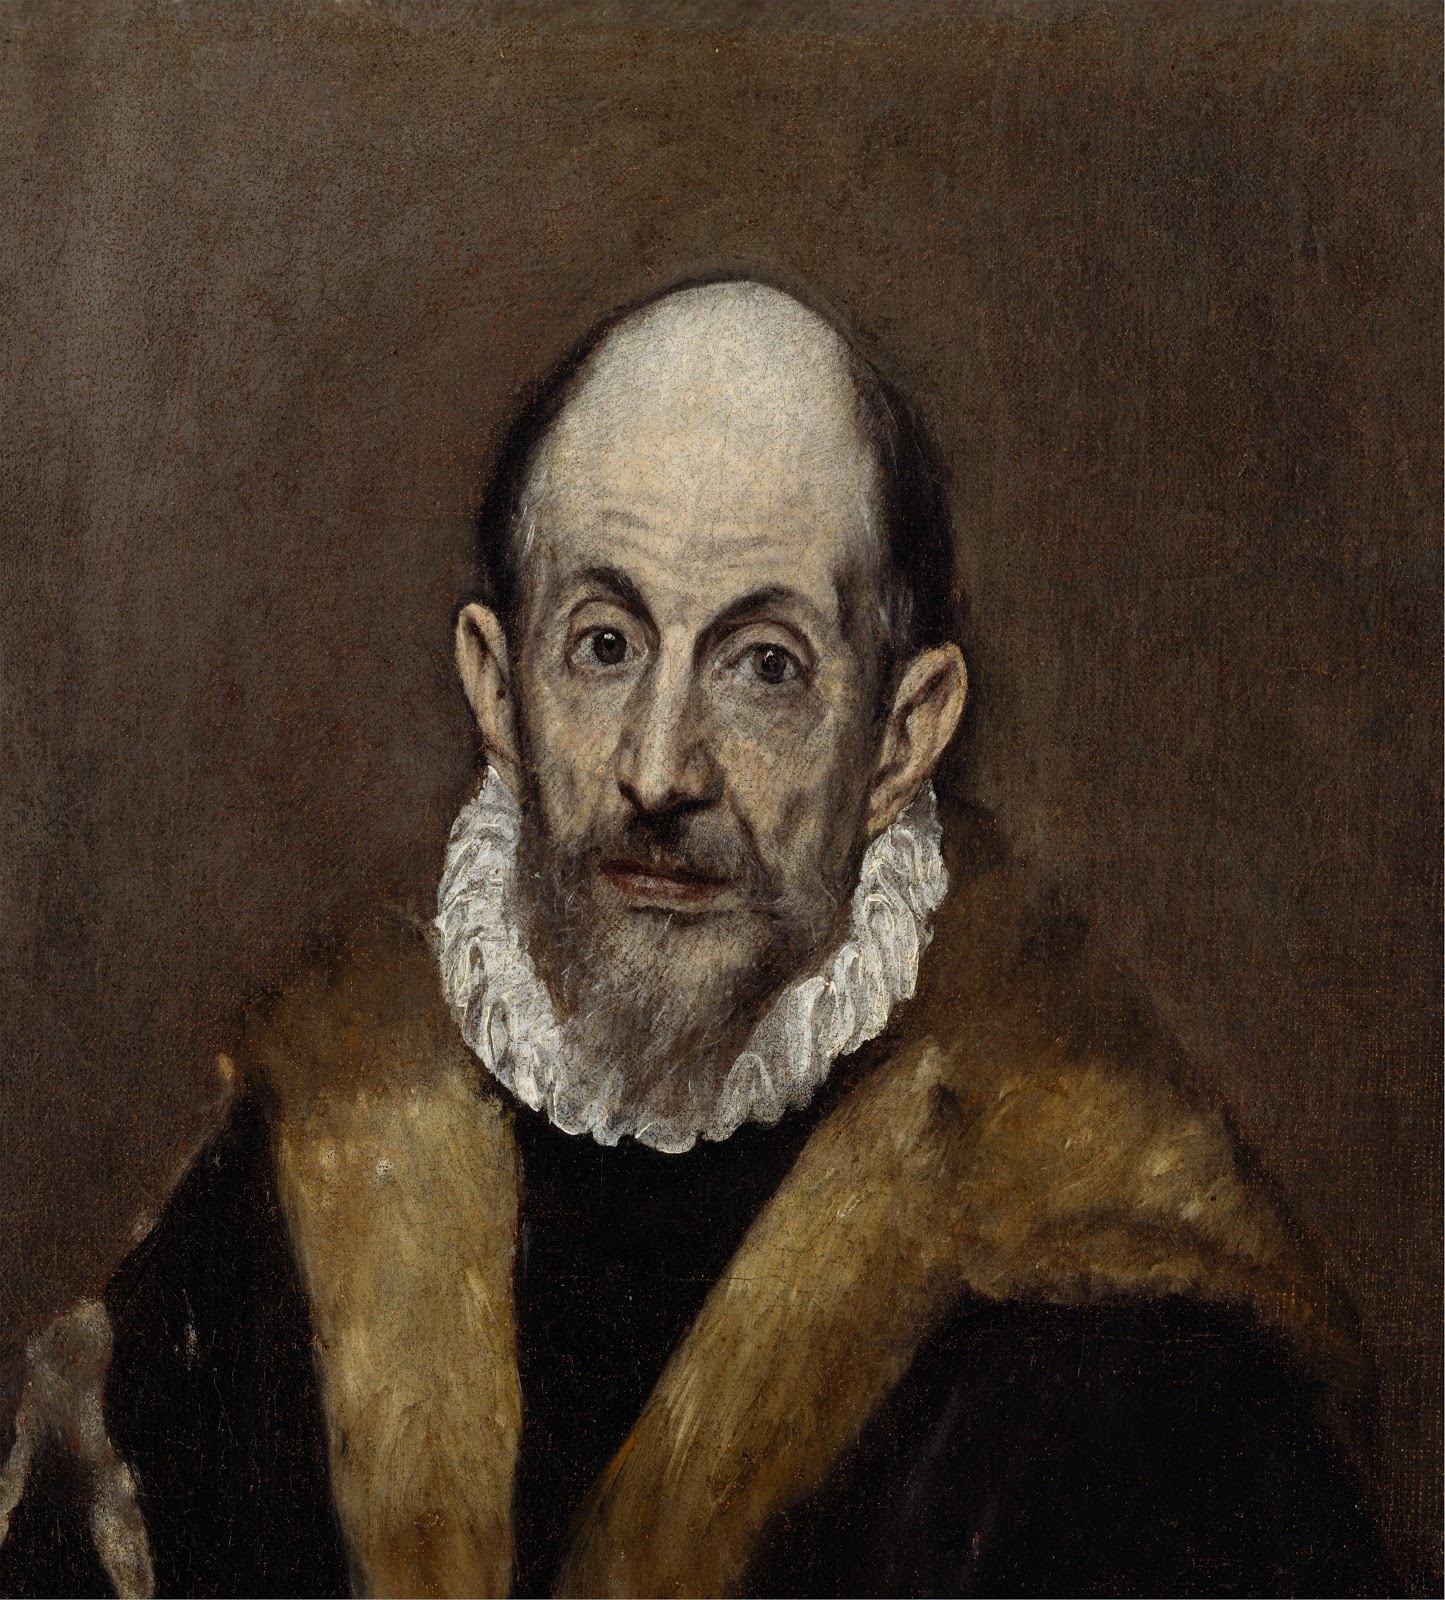 El+Greco-1541-1614 (258).jpg